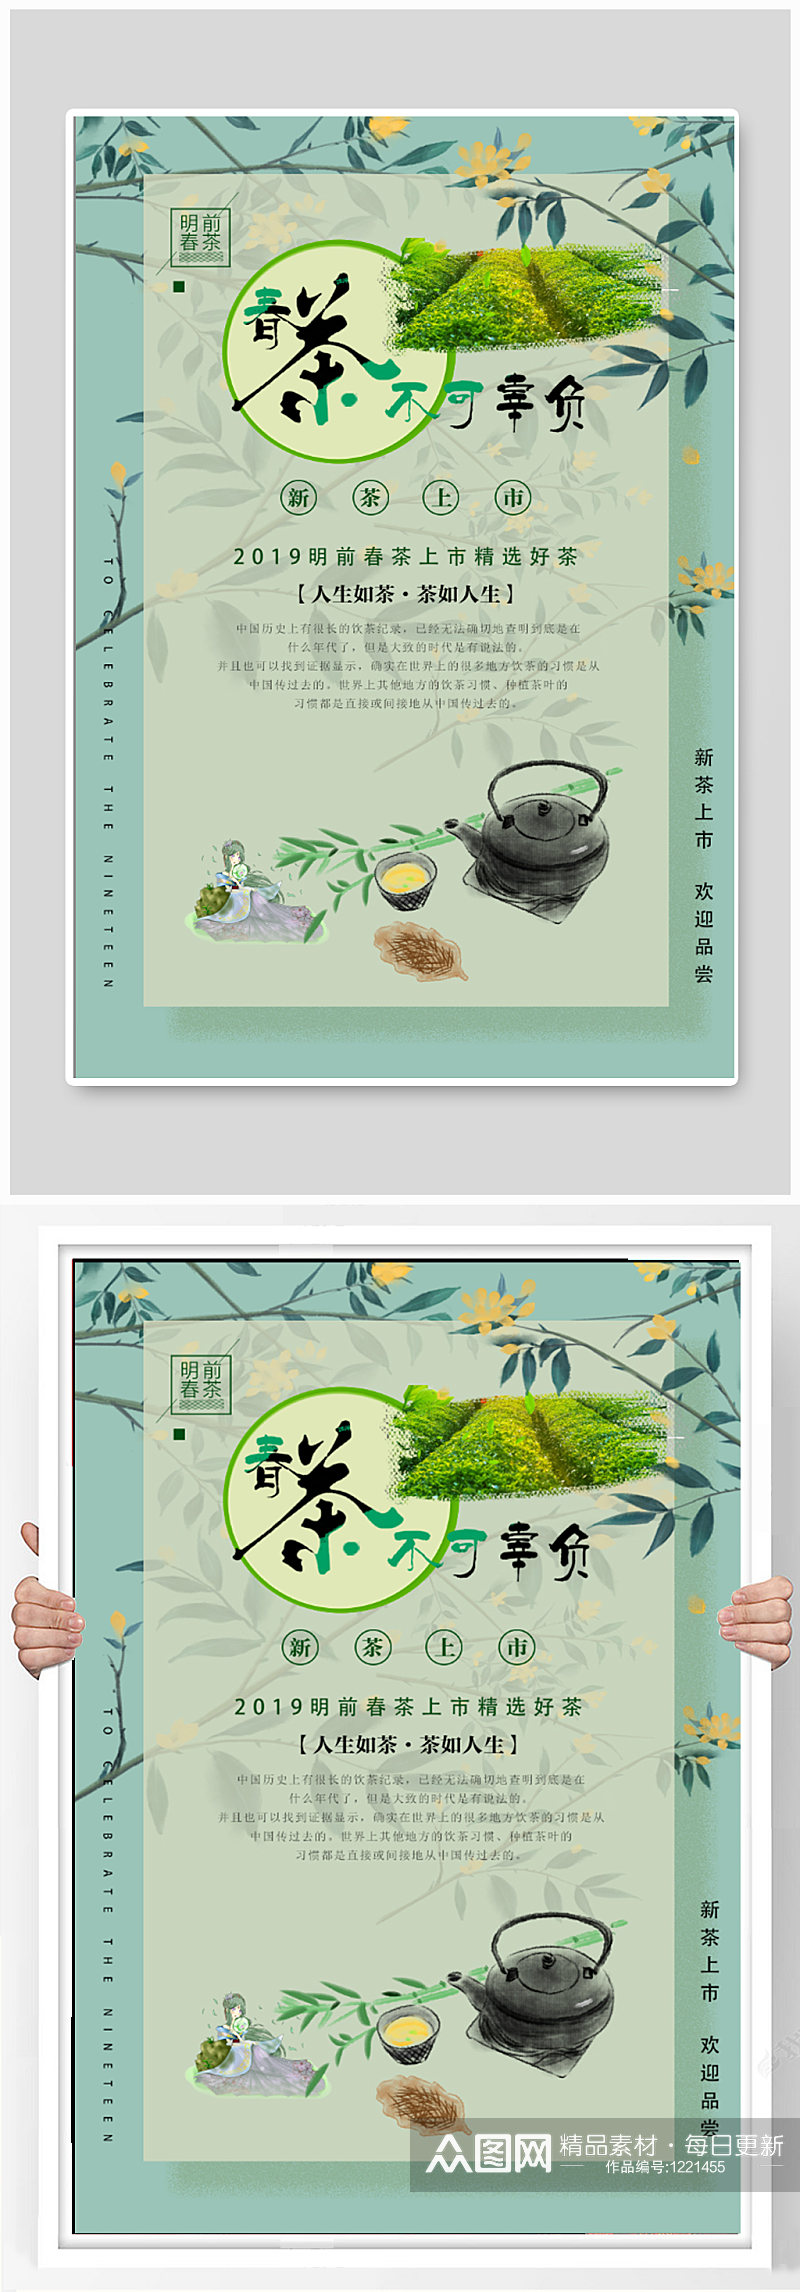 春茶节春茶宣传海报素材